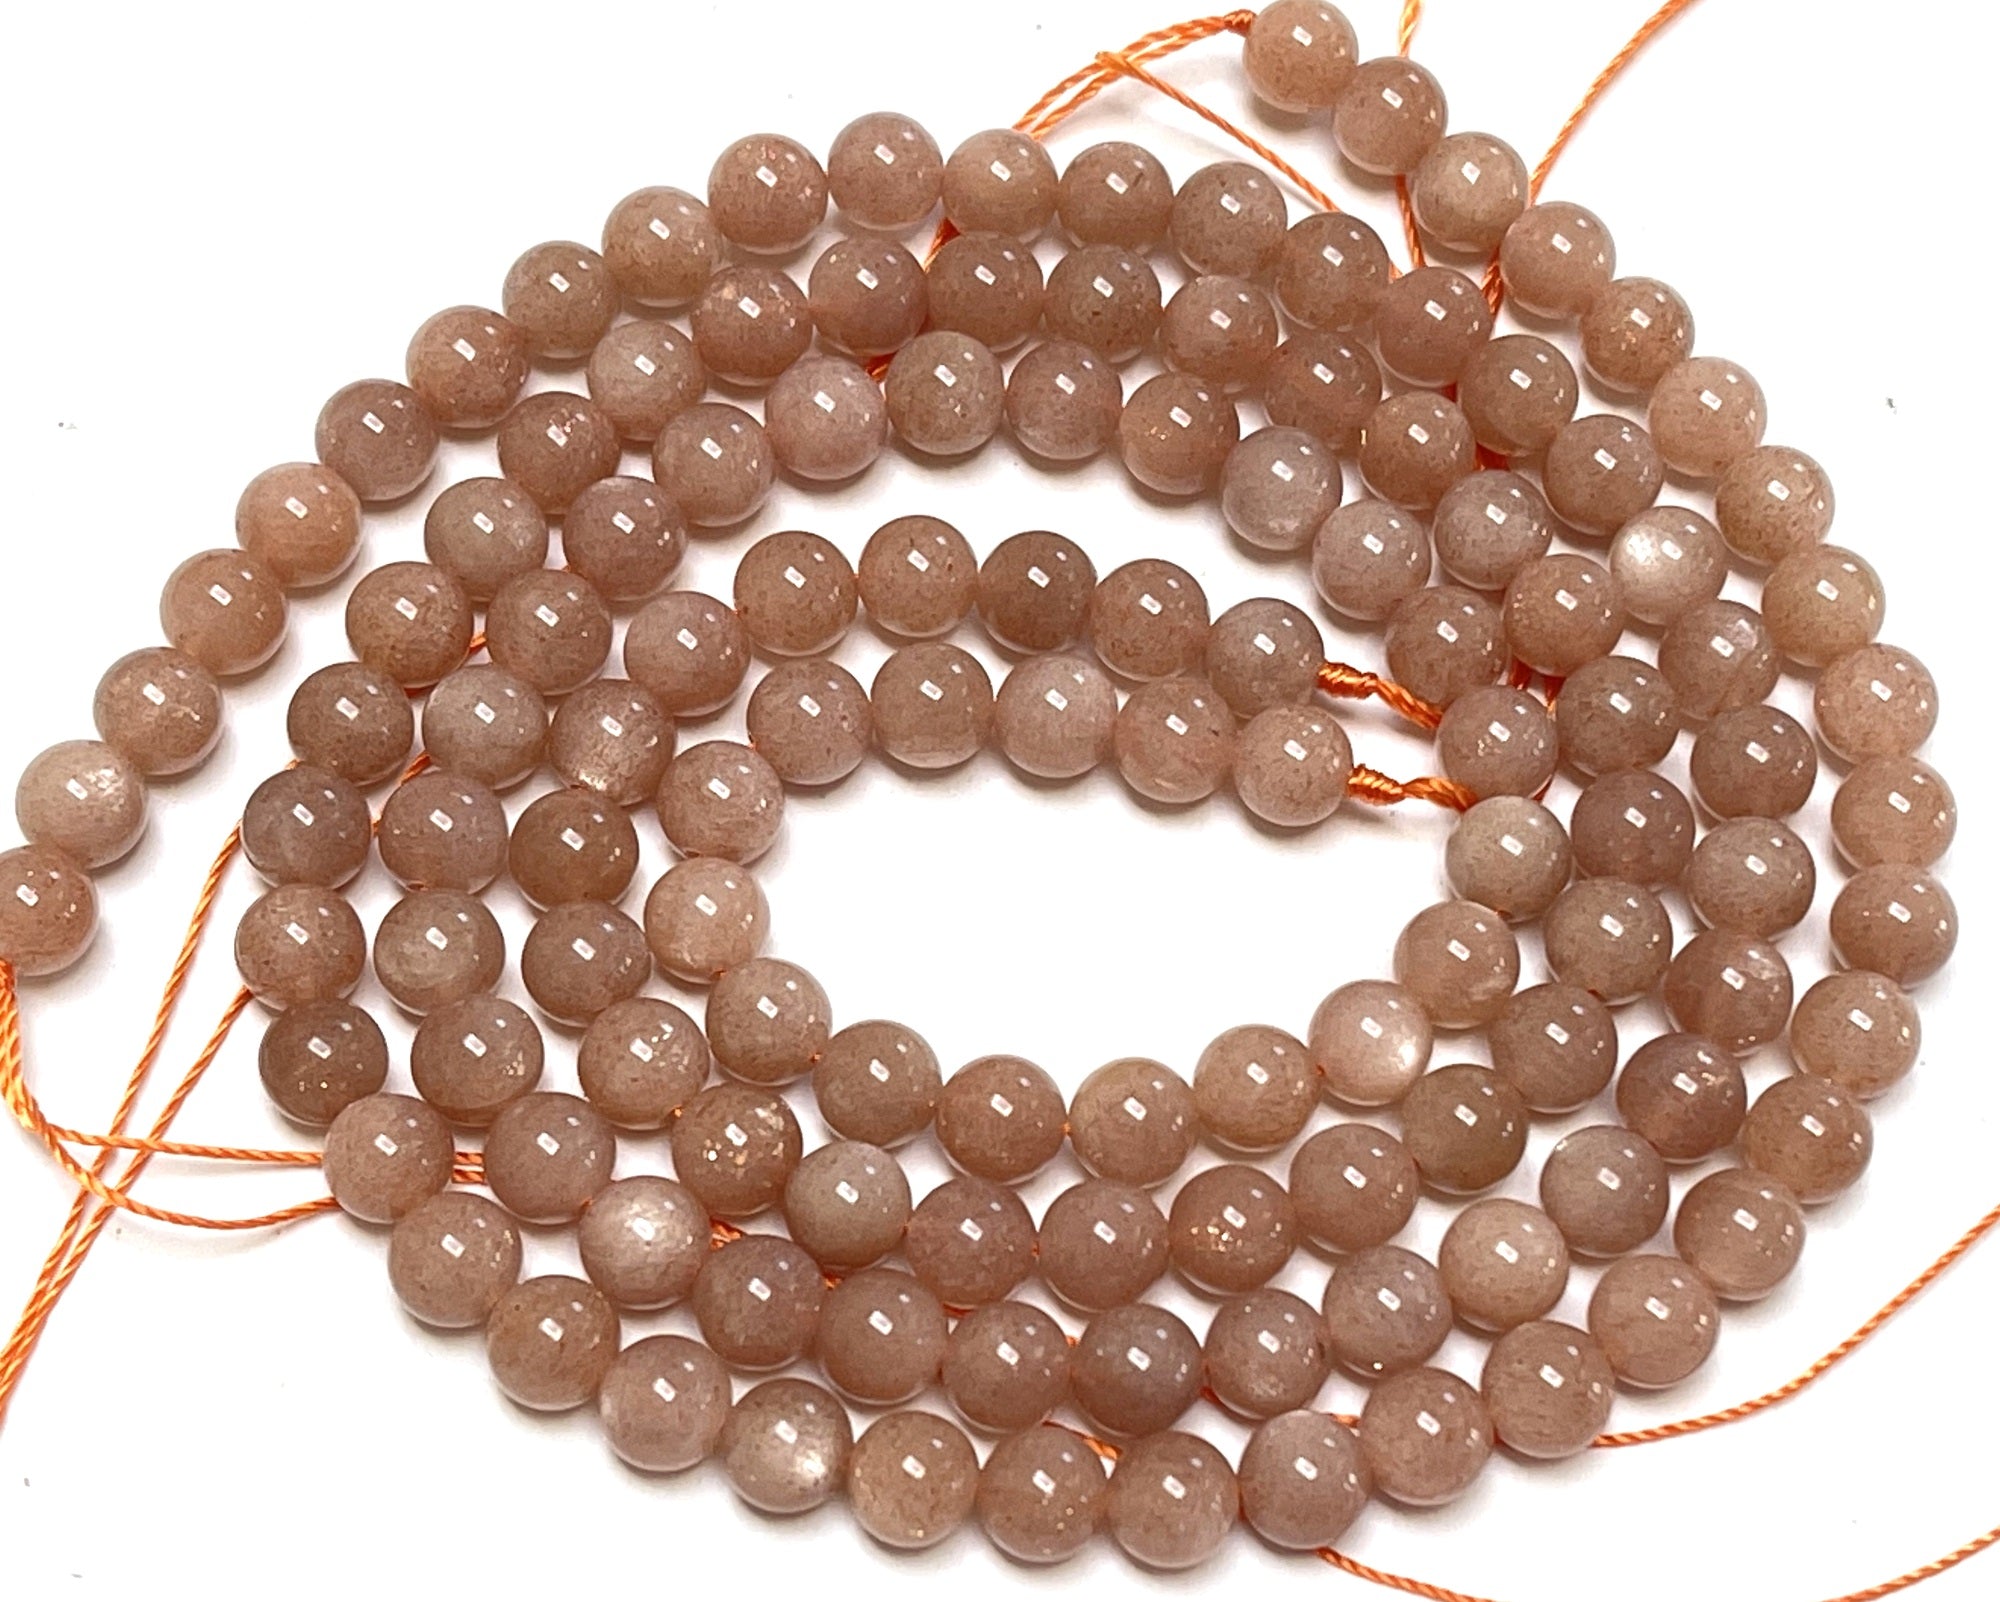 Peach Sunstone 6mm round natural gemstone beads 15.5" strand